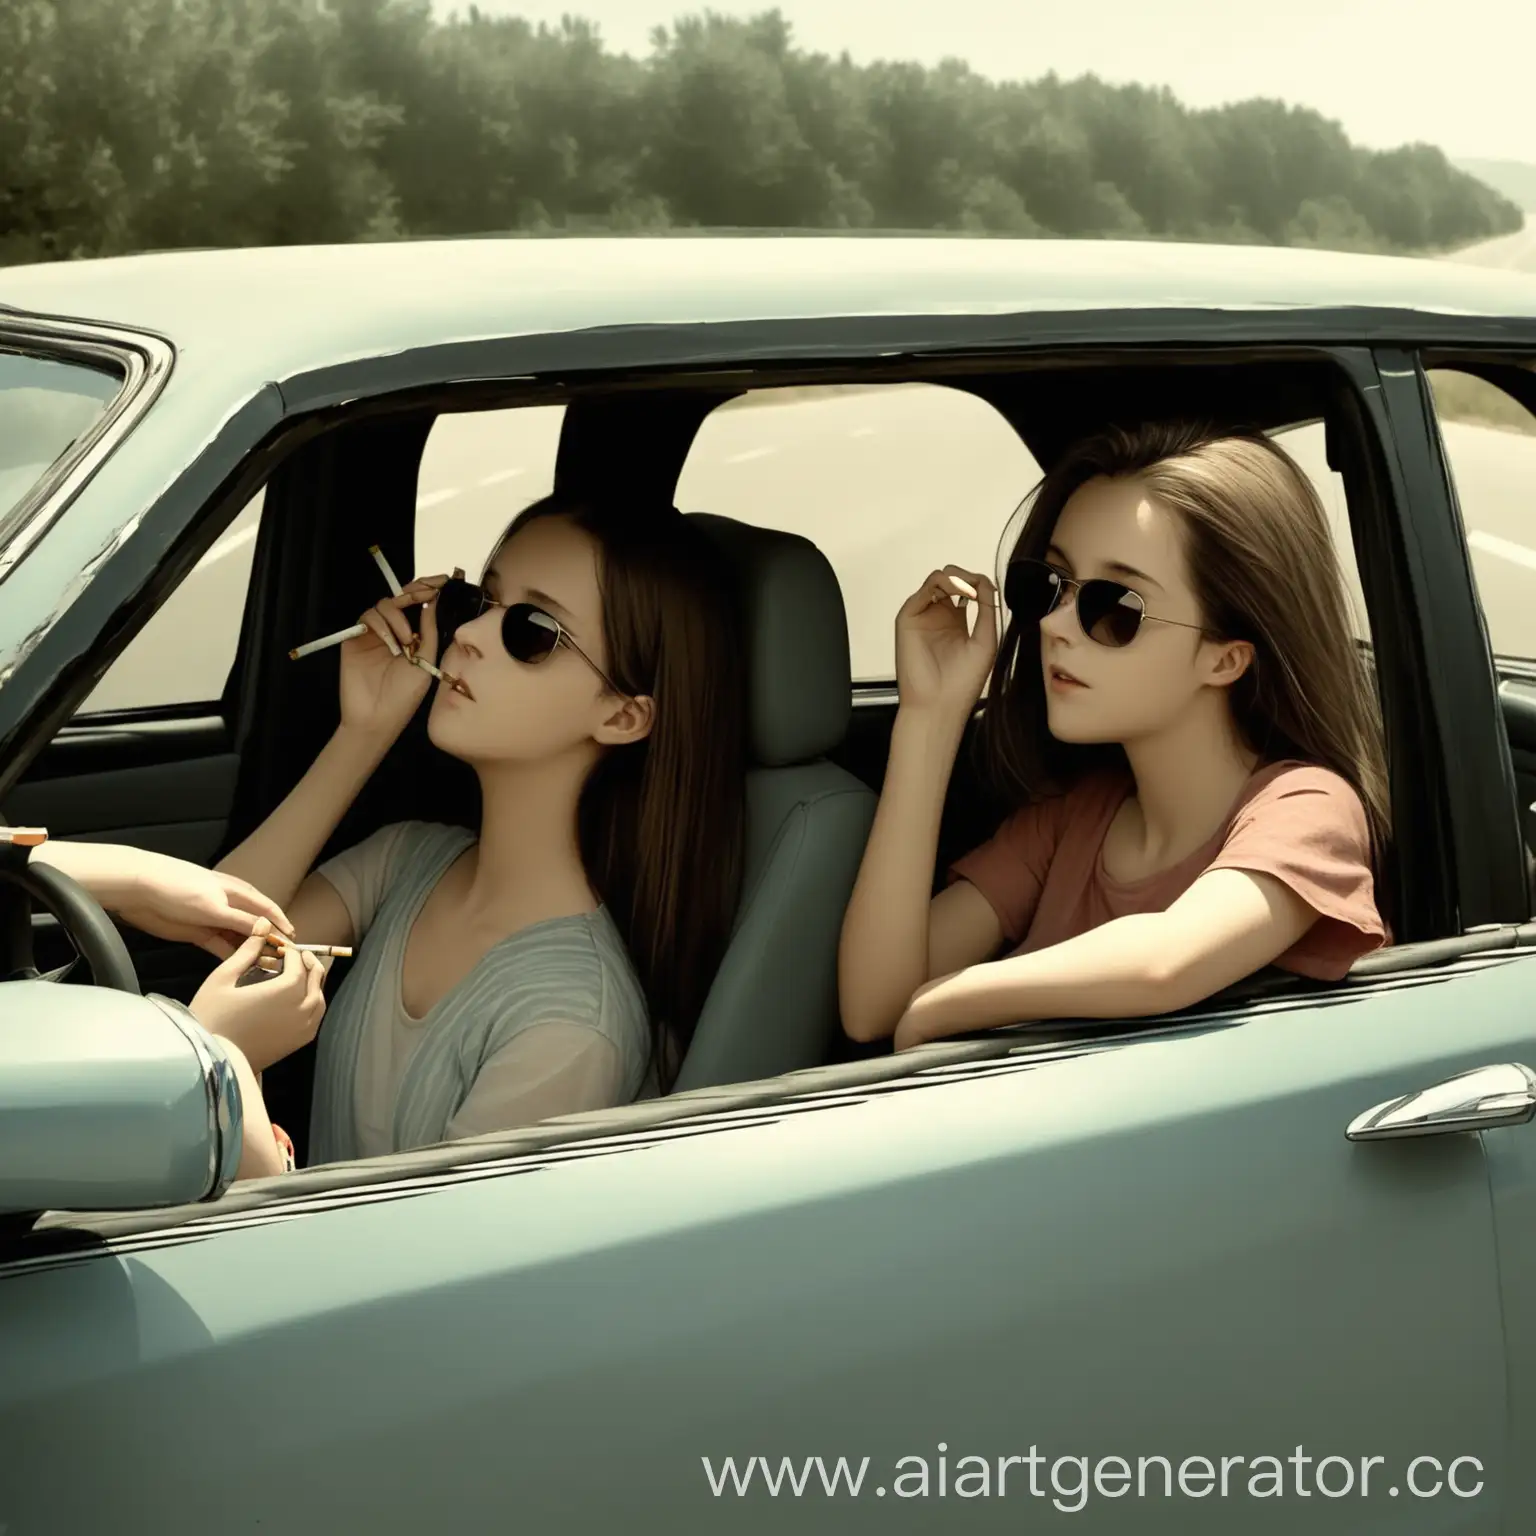 Две девушки сидят в машине без крыши, одна девушка ведёт  машину и смотрит на доргу, а вторая положила локоть на дверь машины, в руках у нее сигареты, а второй рукой она поправляет очки от солнца 
